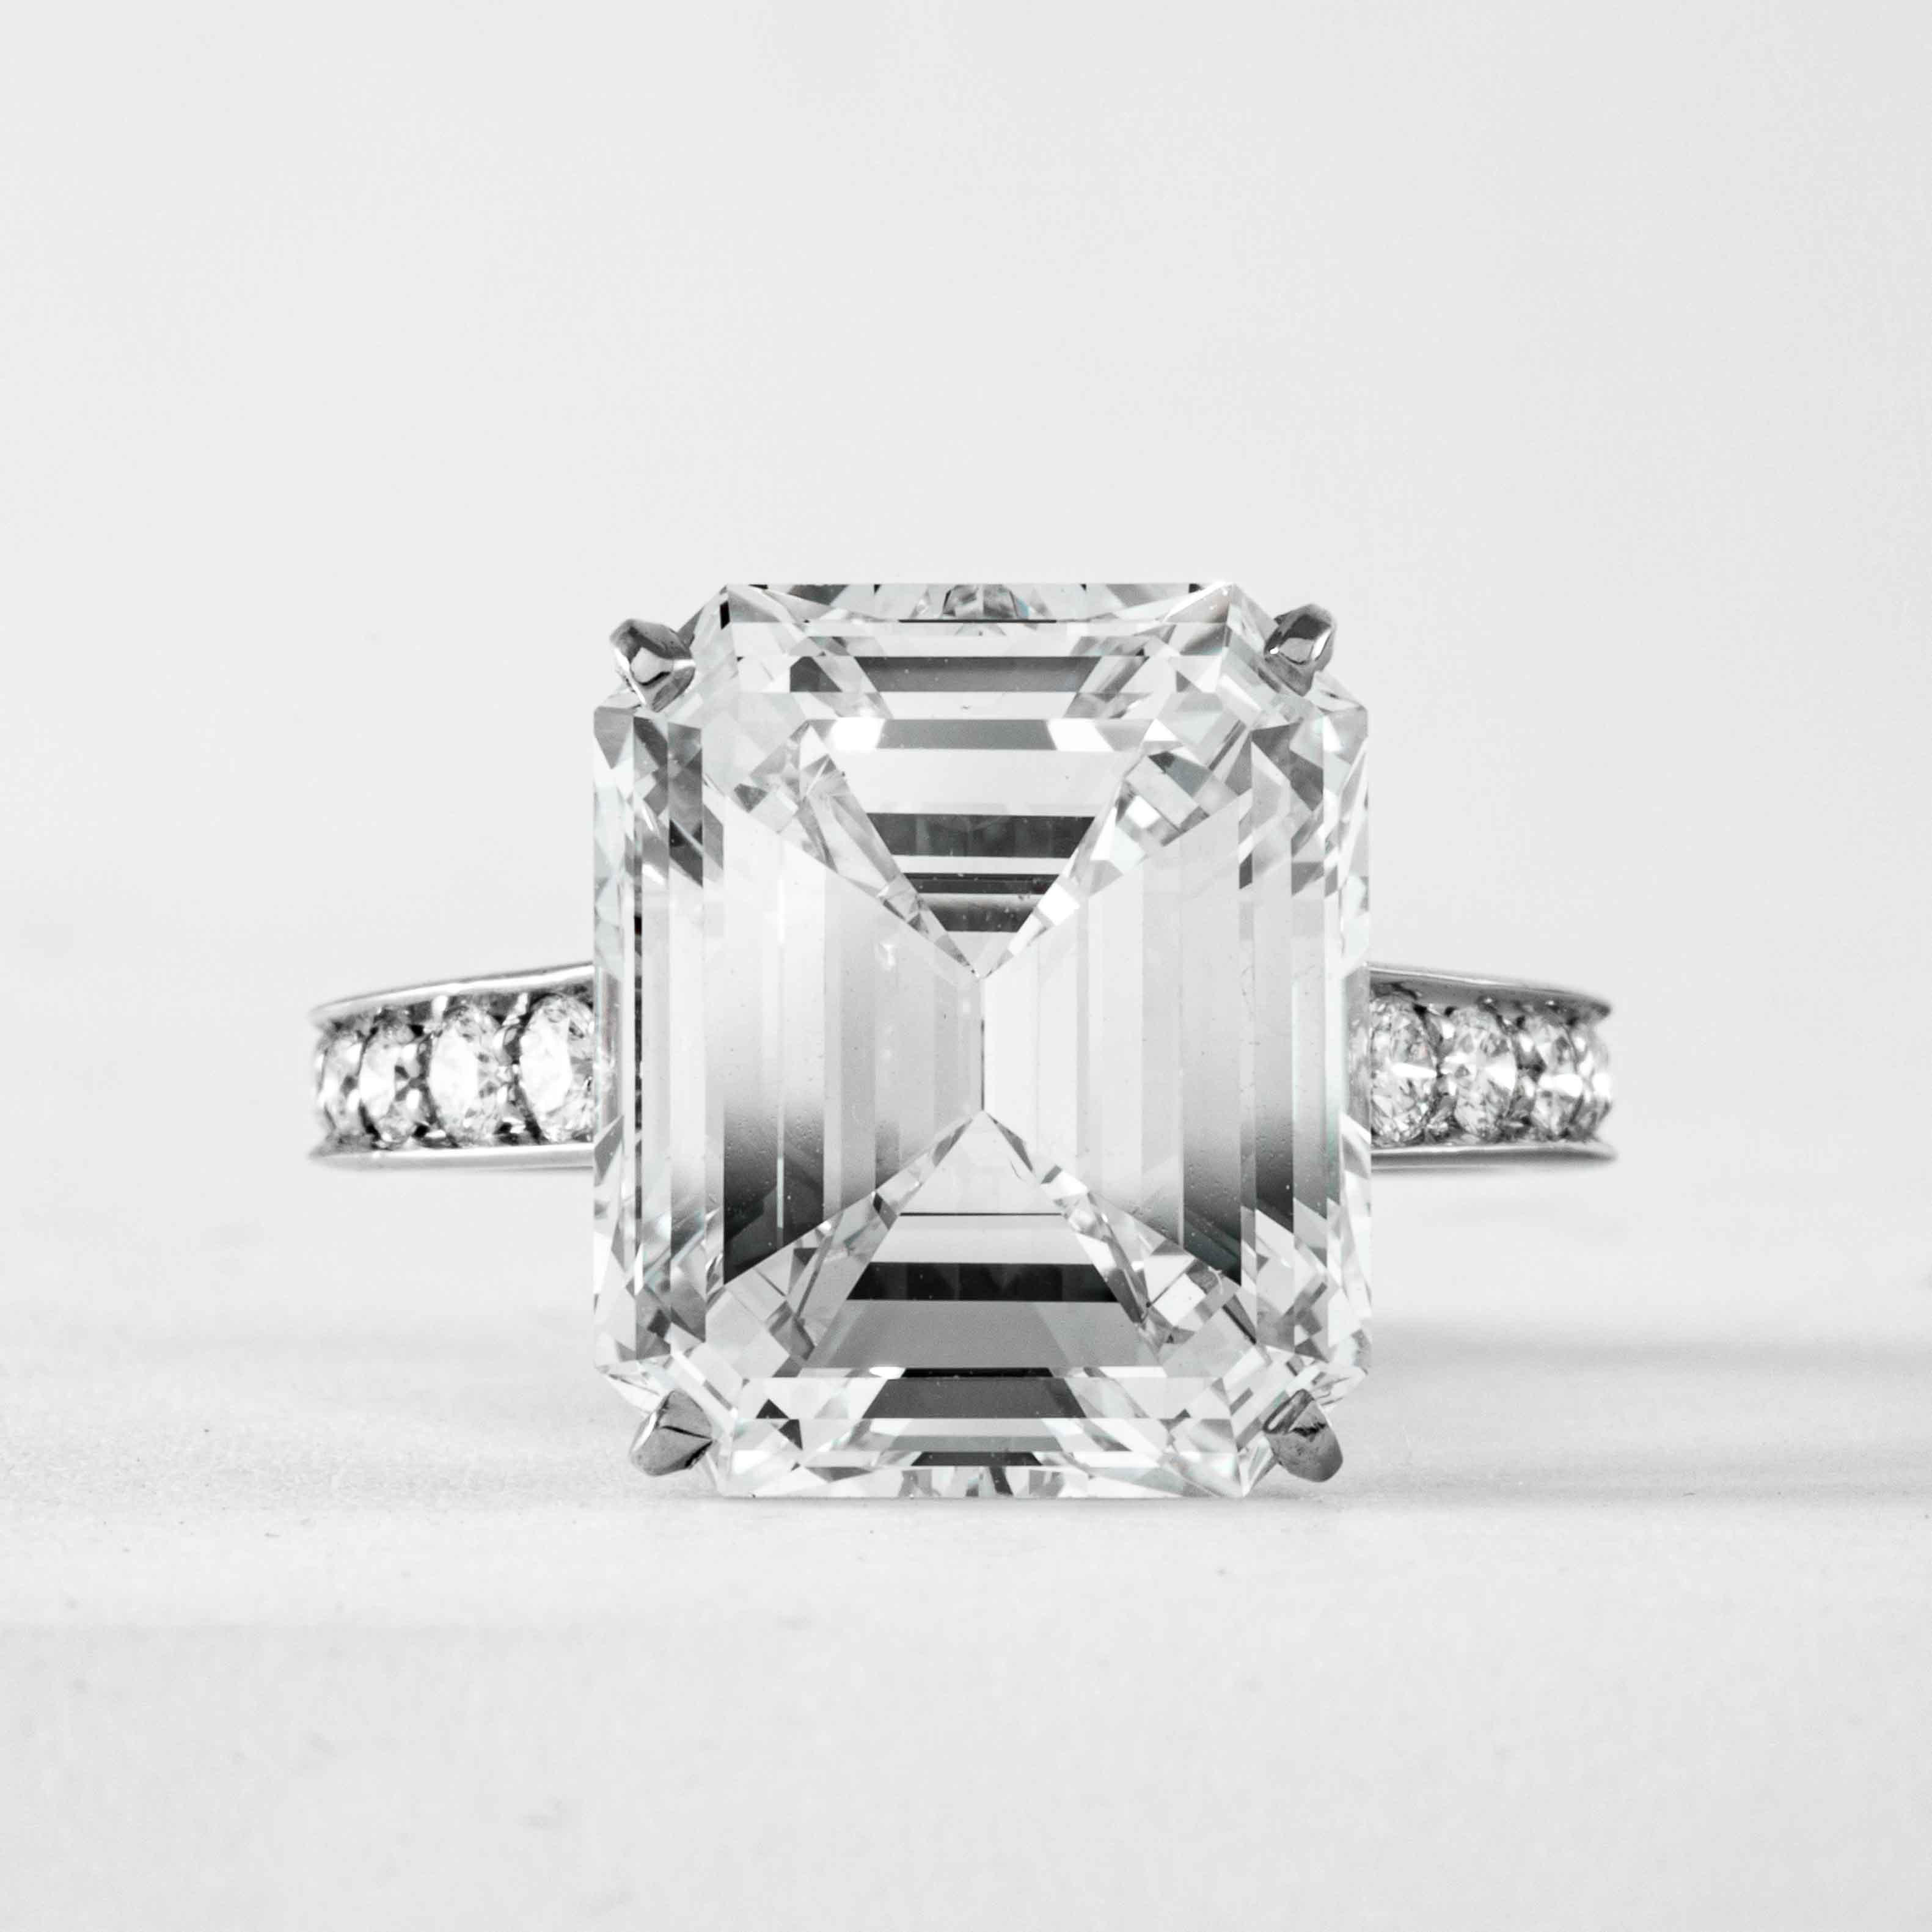 Cette impressionnante bague en diamant est proposée par Shreve, Crump & Low. Ce diamant taille émeraude de 10,29 carats certifié GIA I VS2 est serti sur mesure dans une bague en platine fabriquée à la main par Cartier. Le diamant central de 10,29